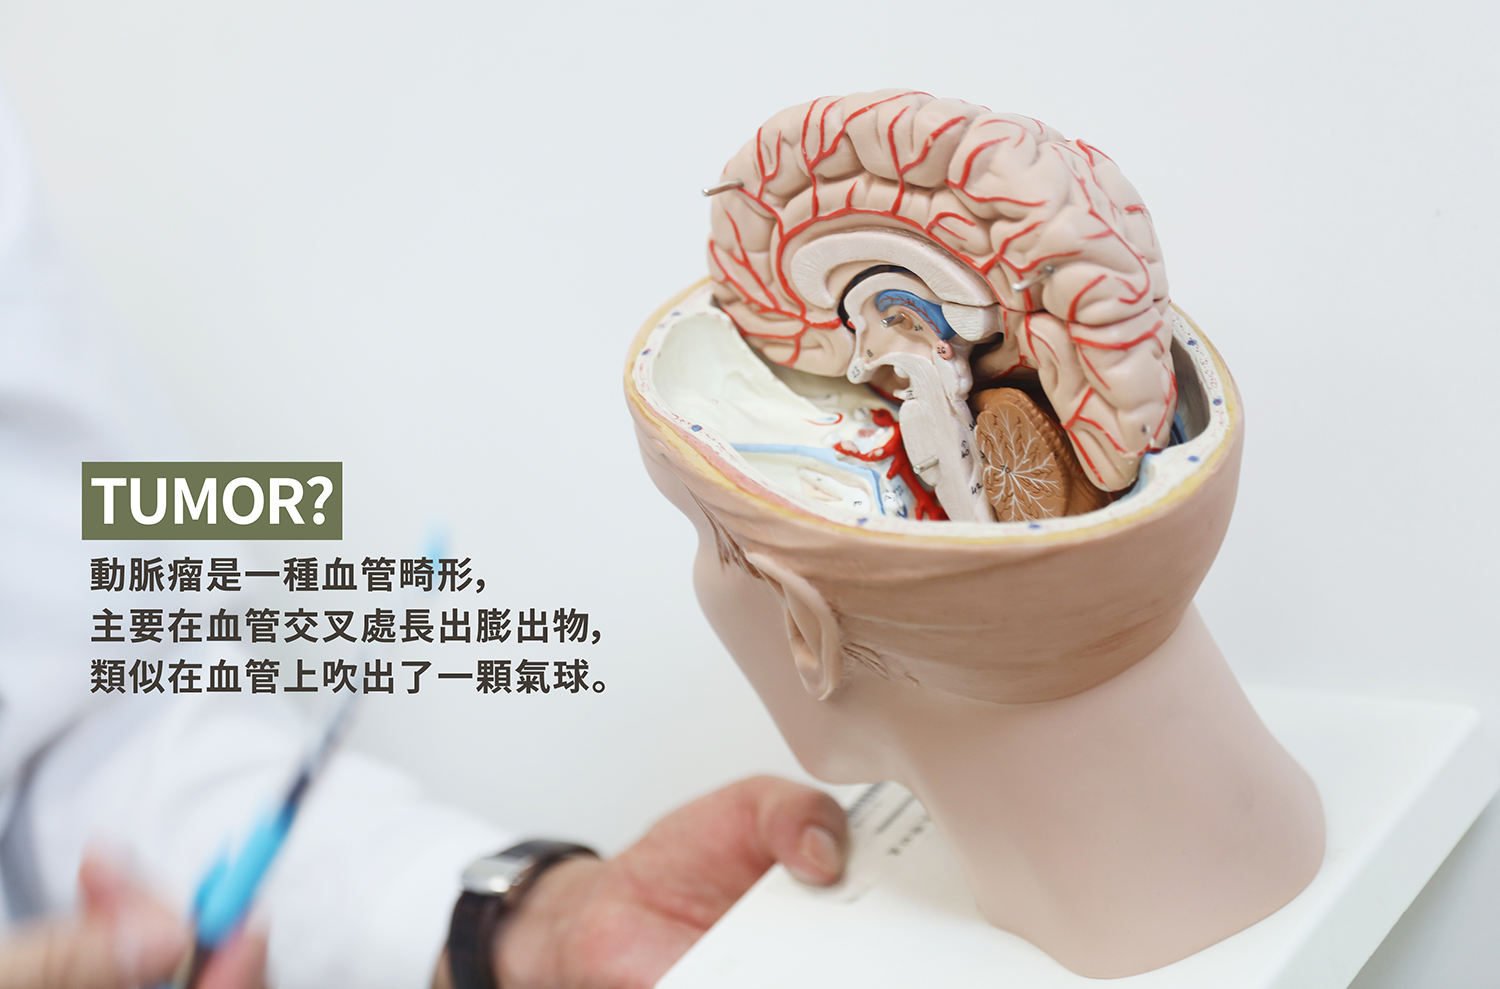 神經外科部 腦血管神經外科 陳春忠醫師